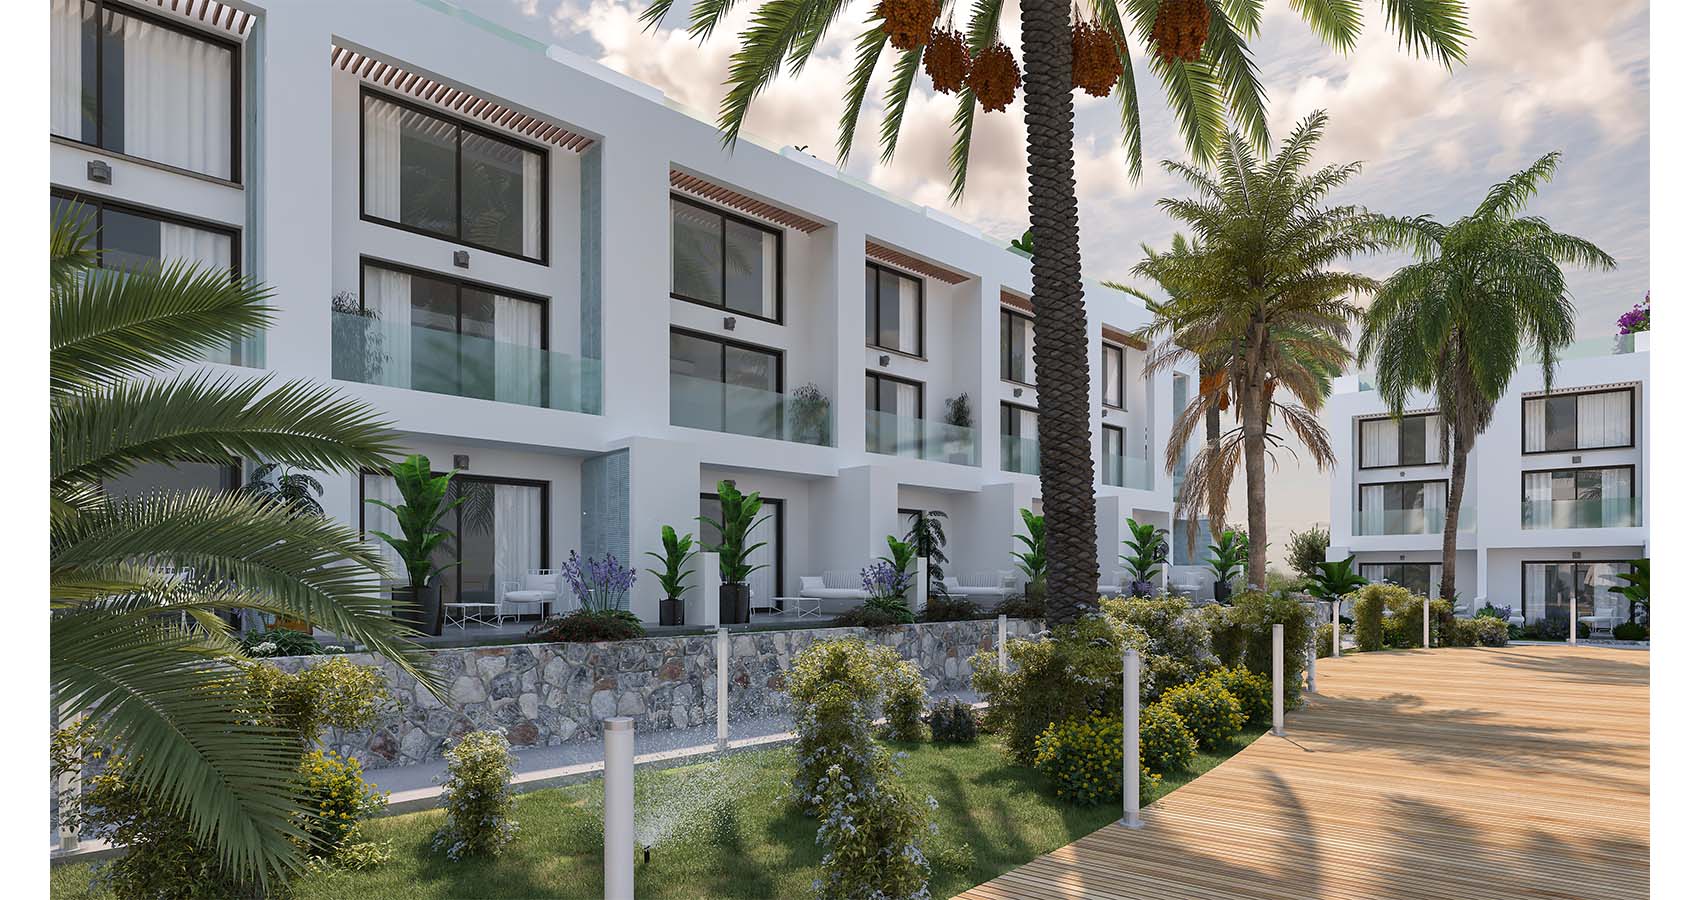 B. Проект роскошных апартаментов на Кипре/Кирении